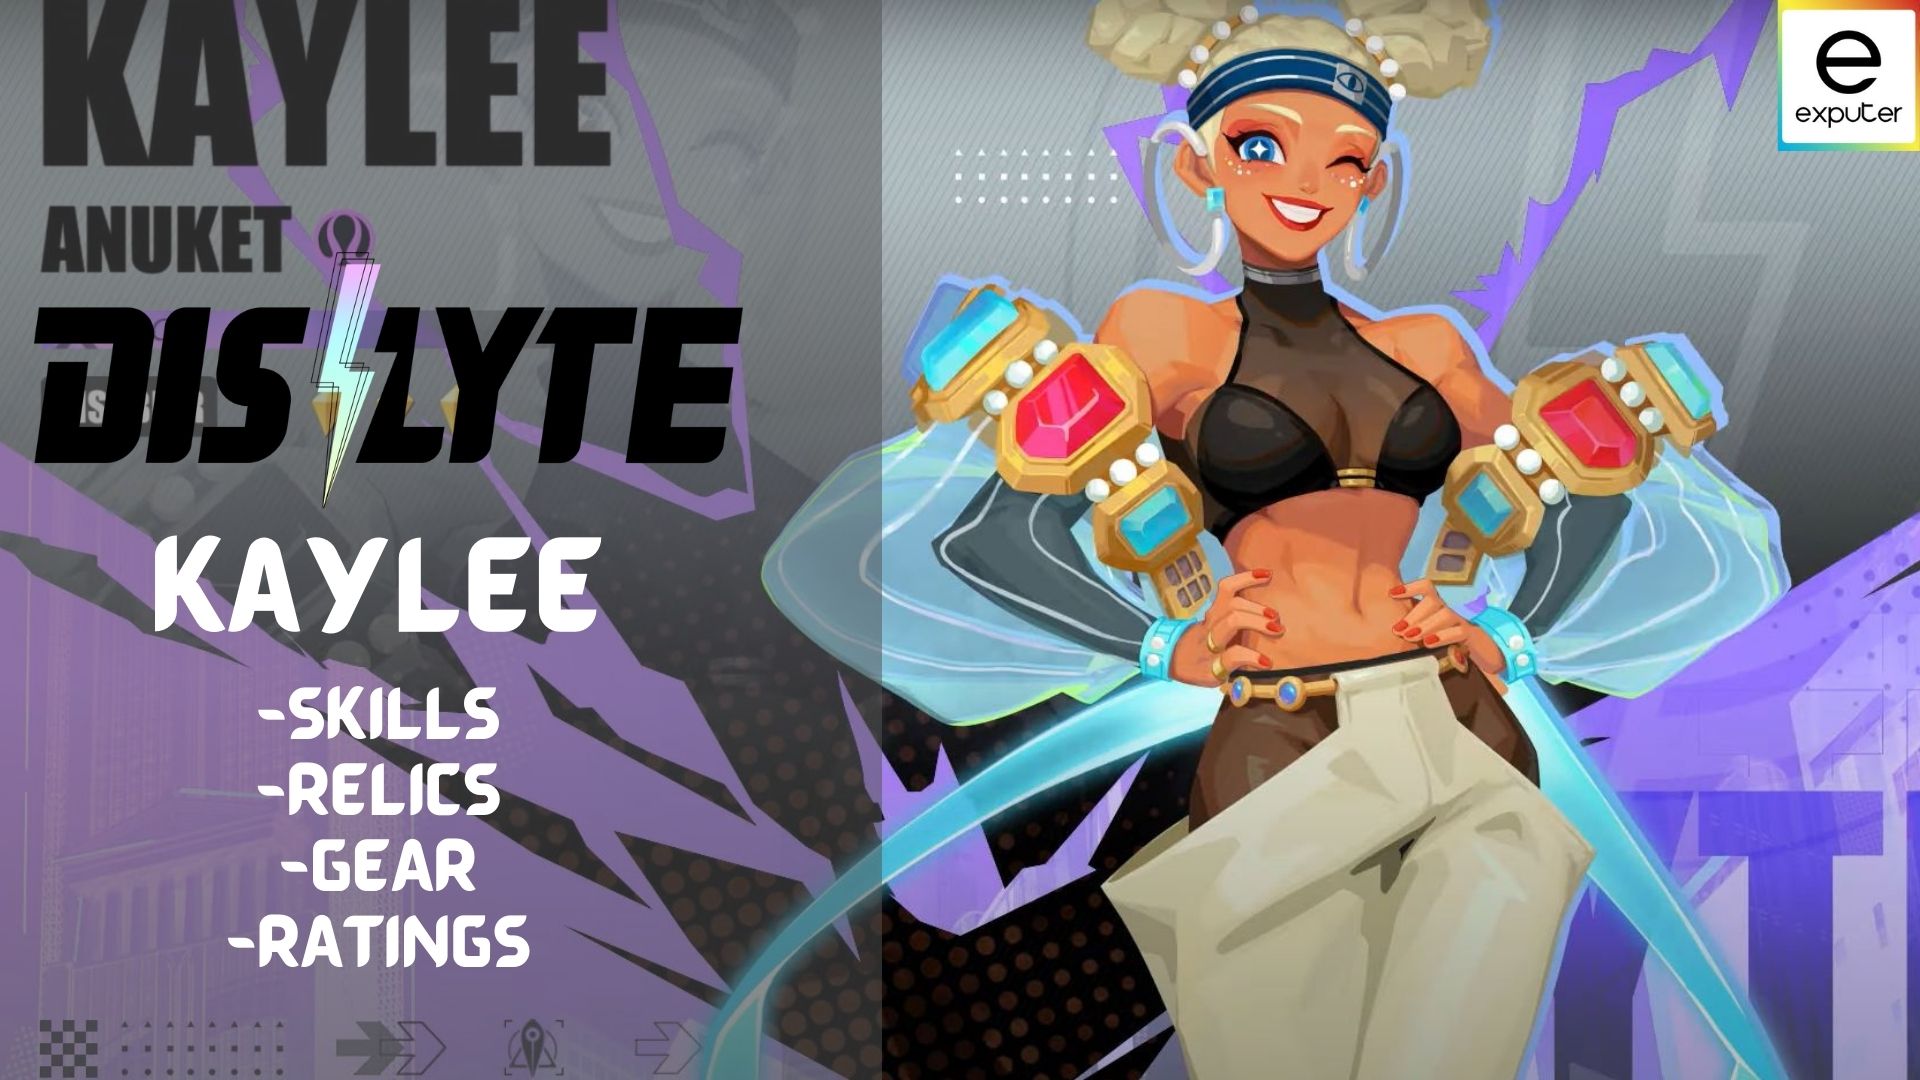 Dislyte Kaylee: Skills, Relics, Gear & Ratings